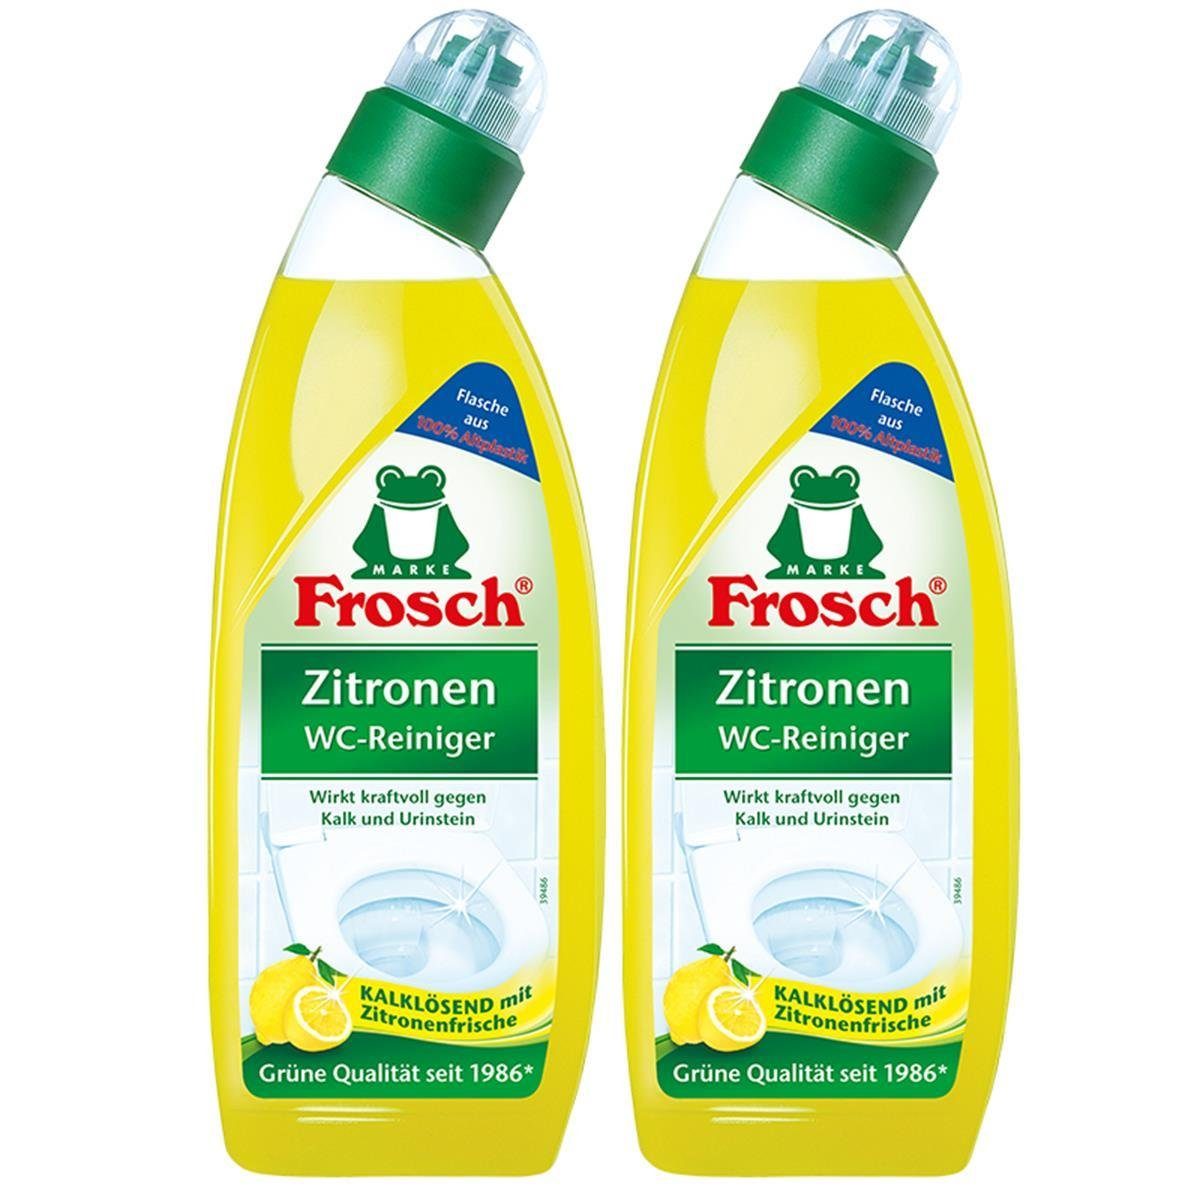 FROSCH 2x Frosch Zitronen WC-Reiniger - 750 Zitrone WC-Reiniger mit Kalklösend ml